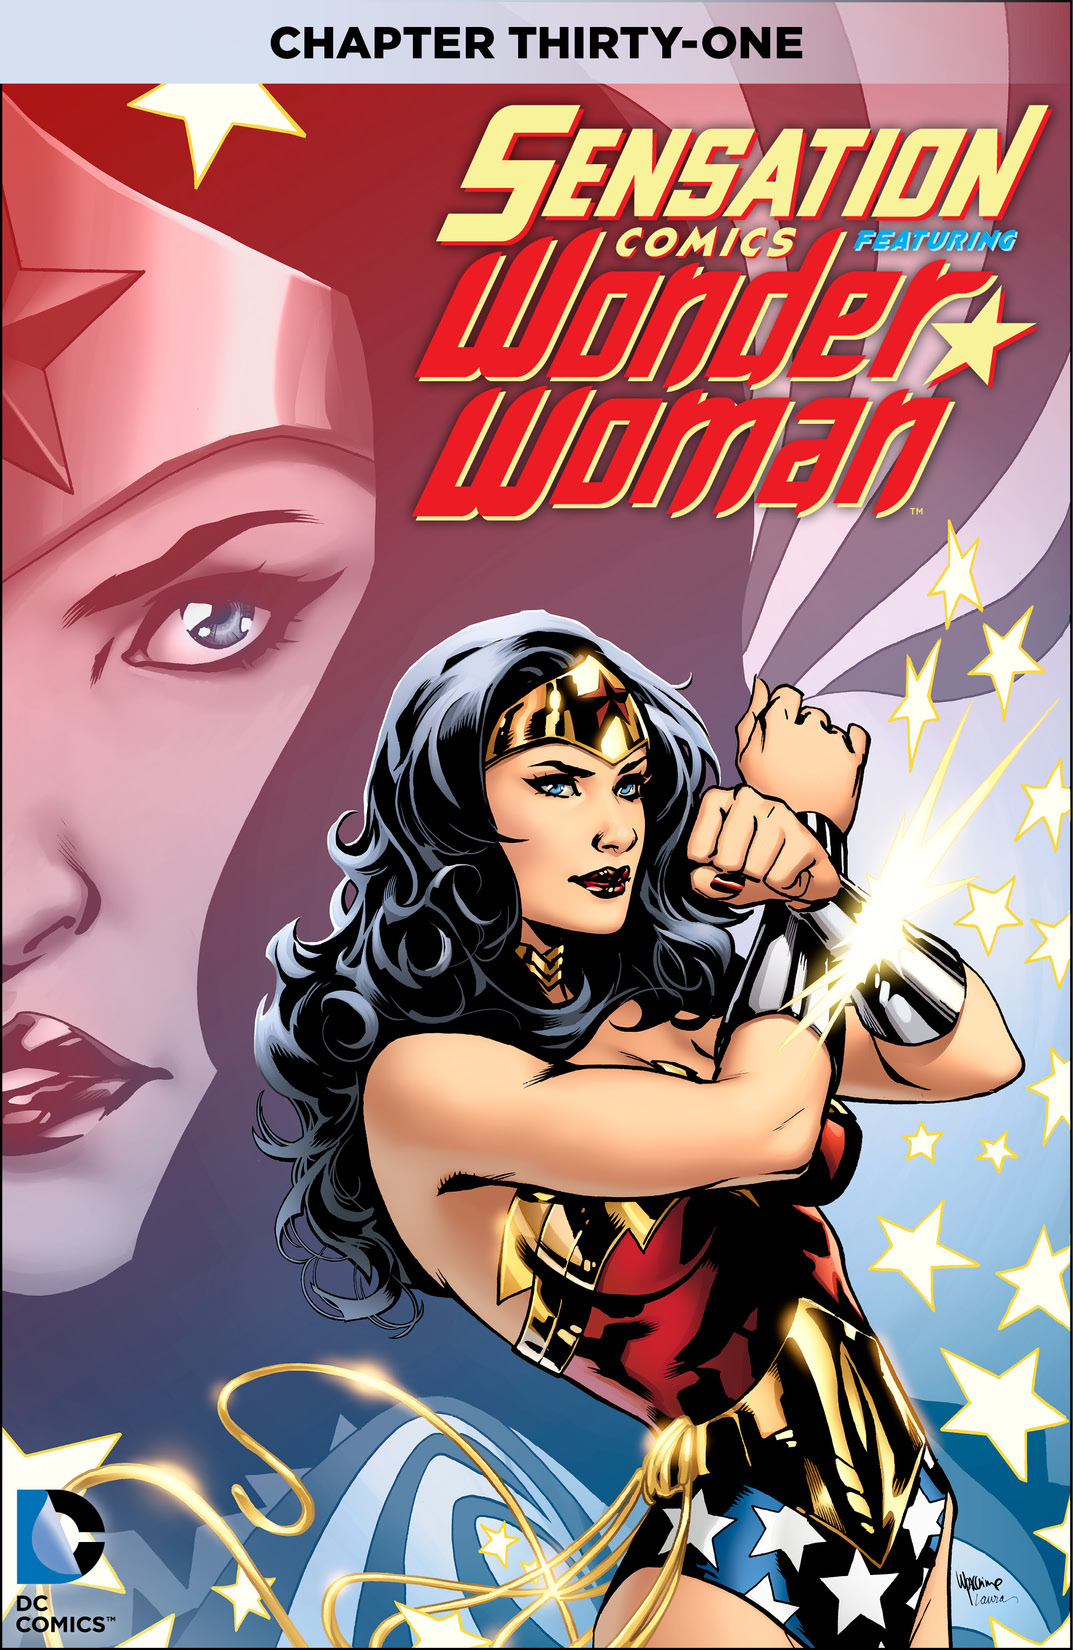 Sensation Comics Featuring Wonder Woman #31 preview images